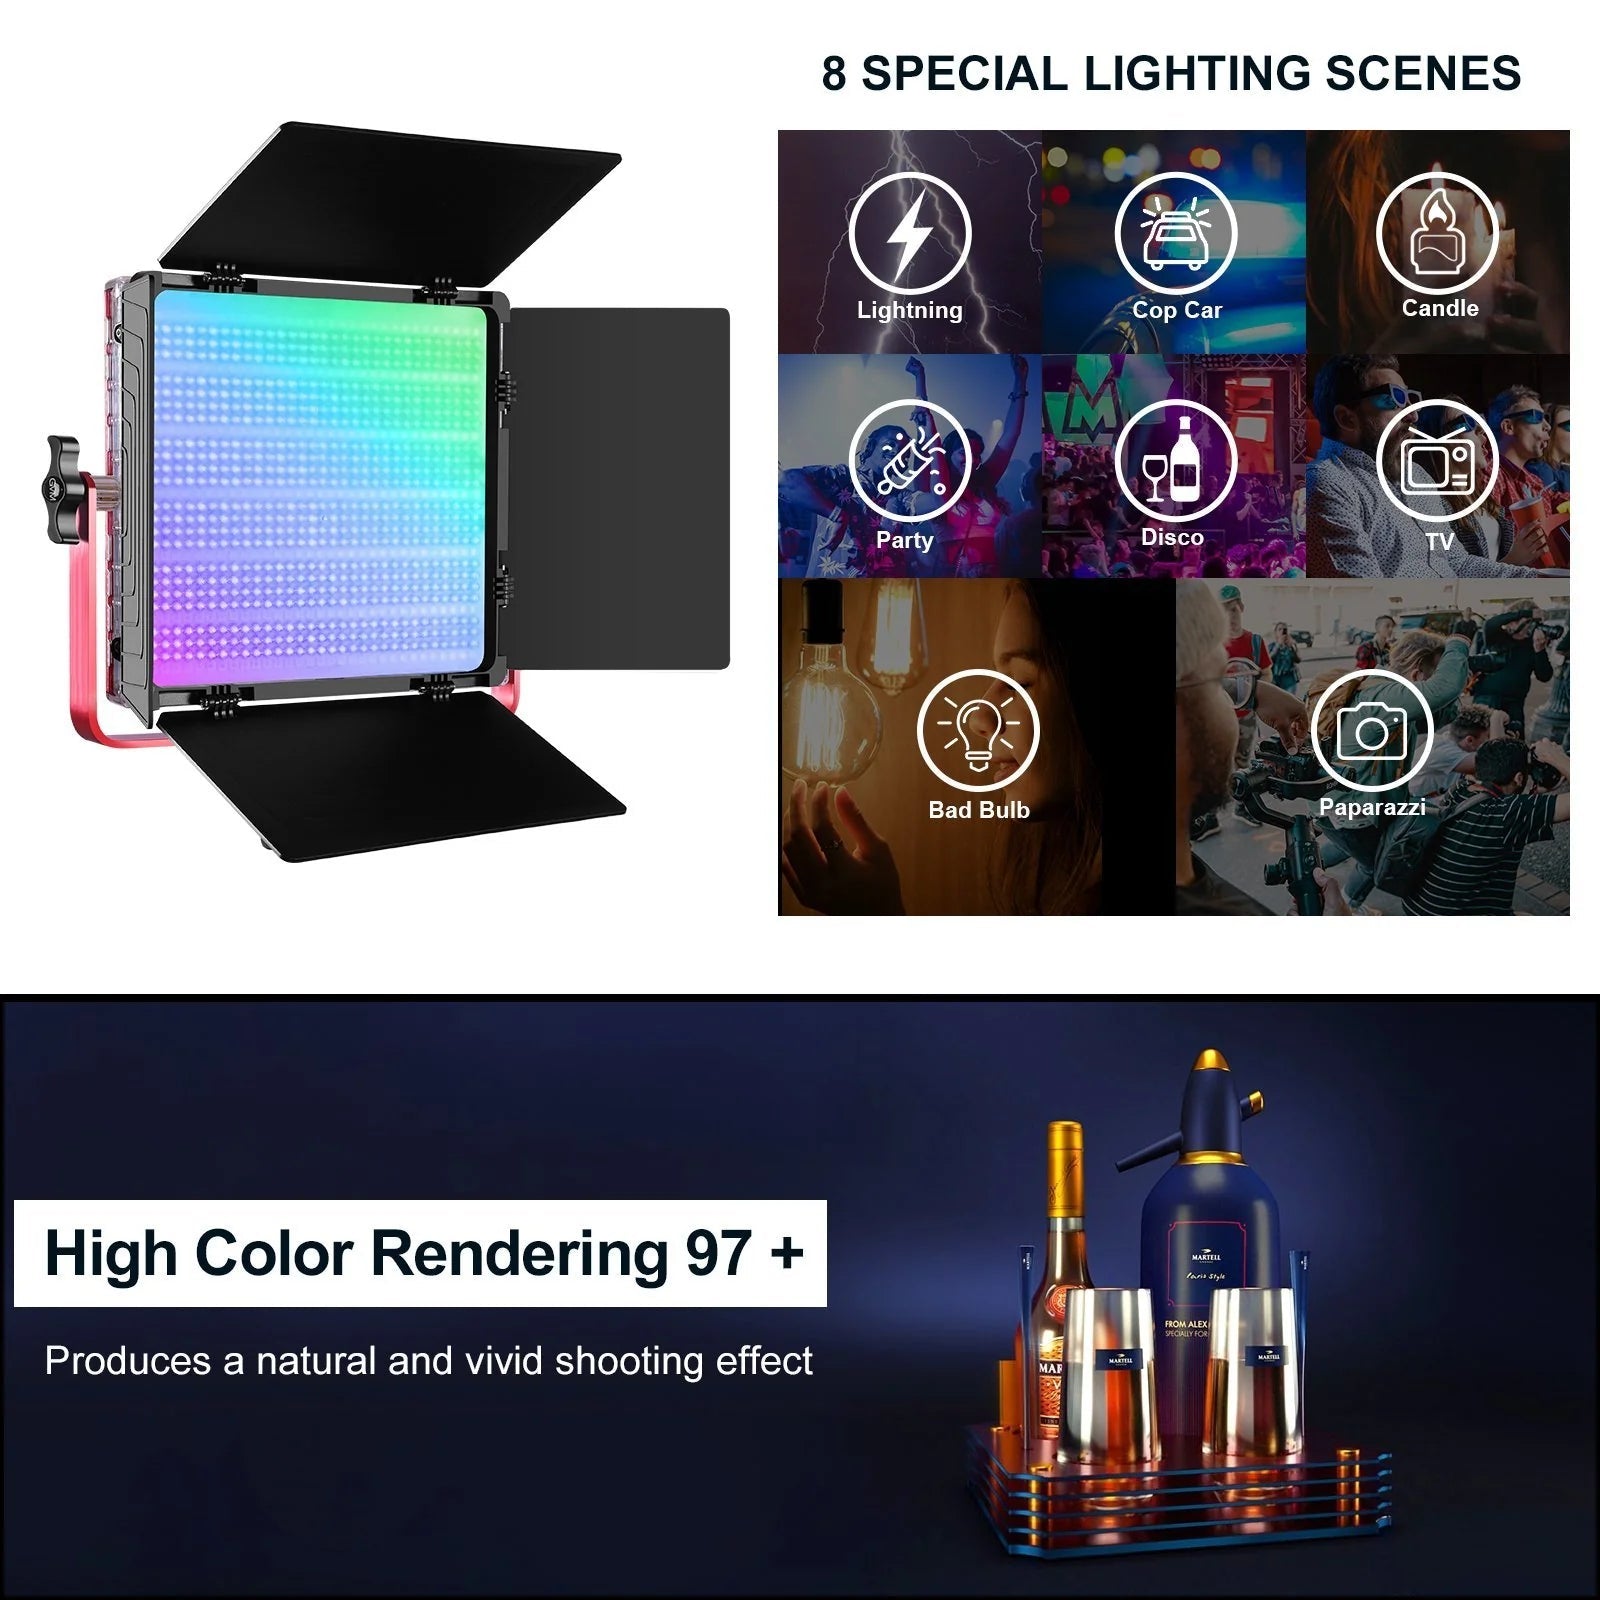 GVM 1200D-RGB LED Studio Video Light Kit - mylensball.com.au